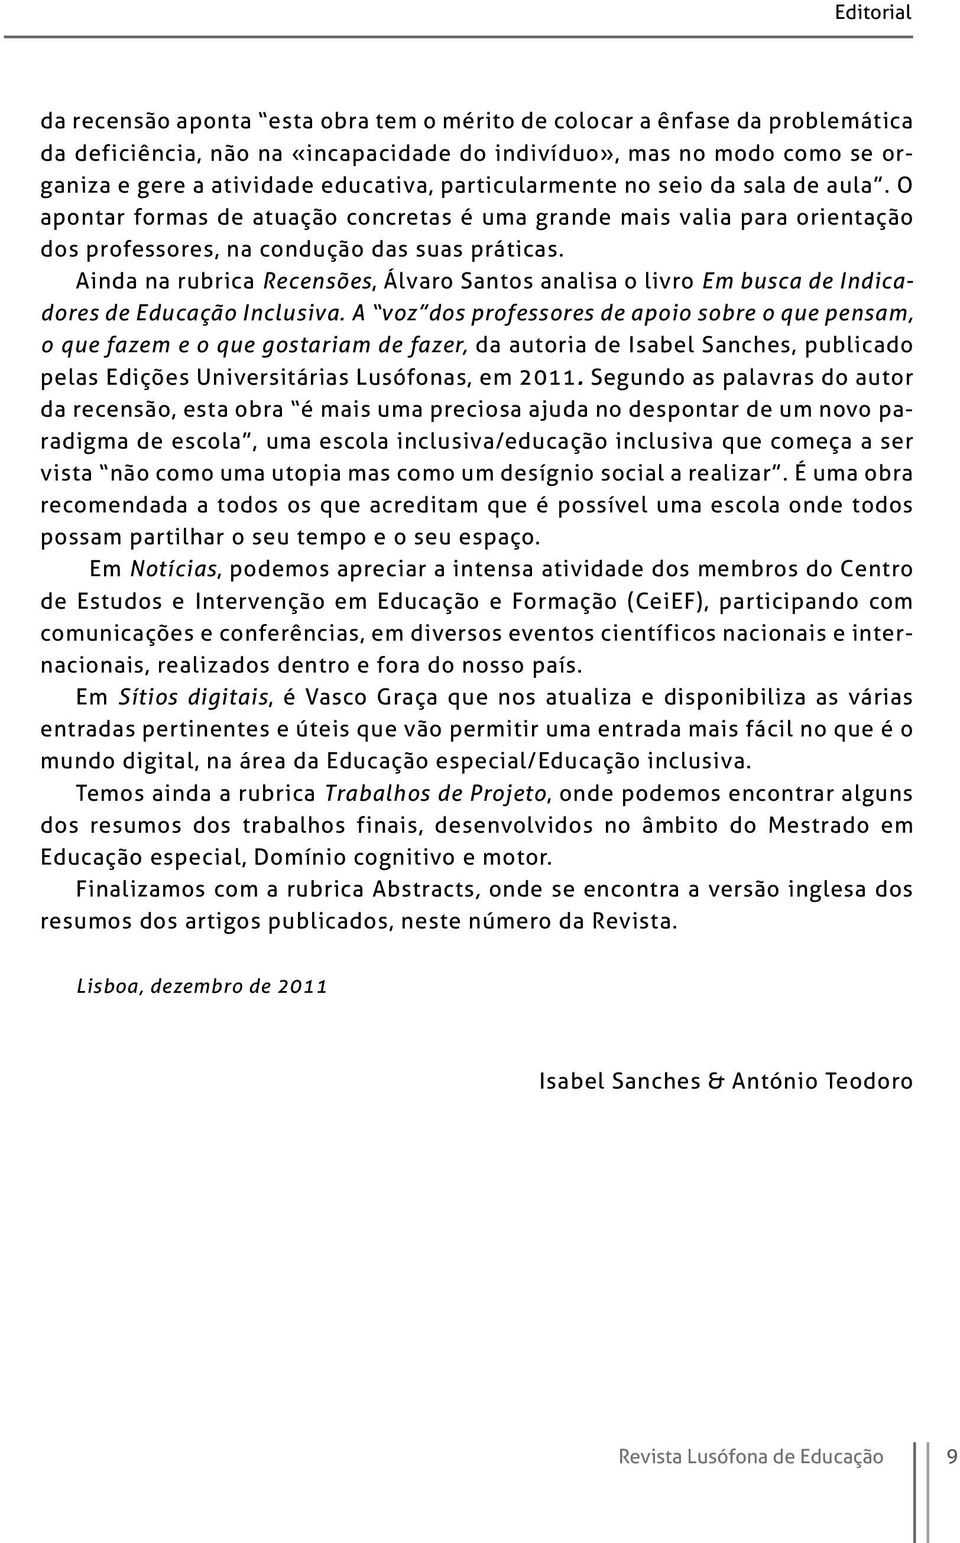 Ainda na rubrica Recensões, Álvaro Santos analisa o livro Em busca de Indicadores de Educação Inclusiva.